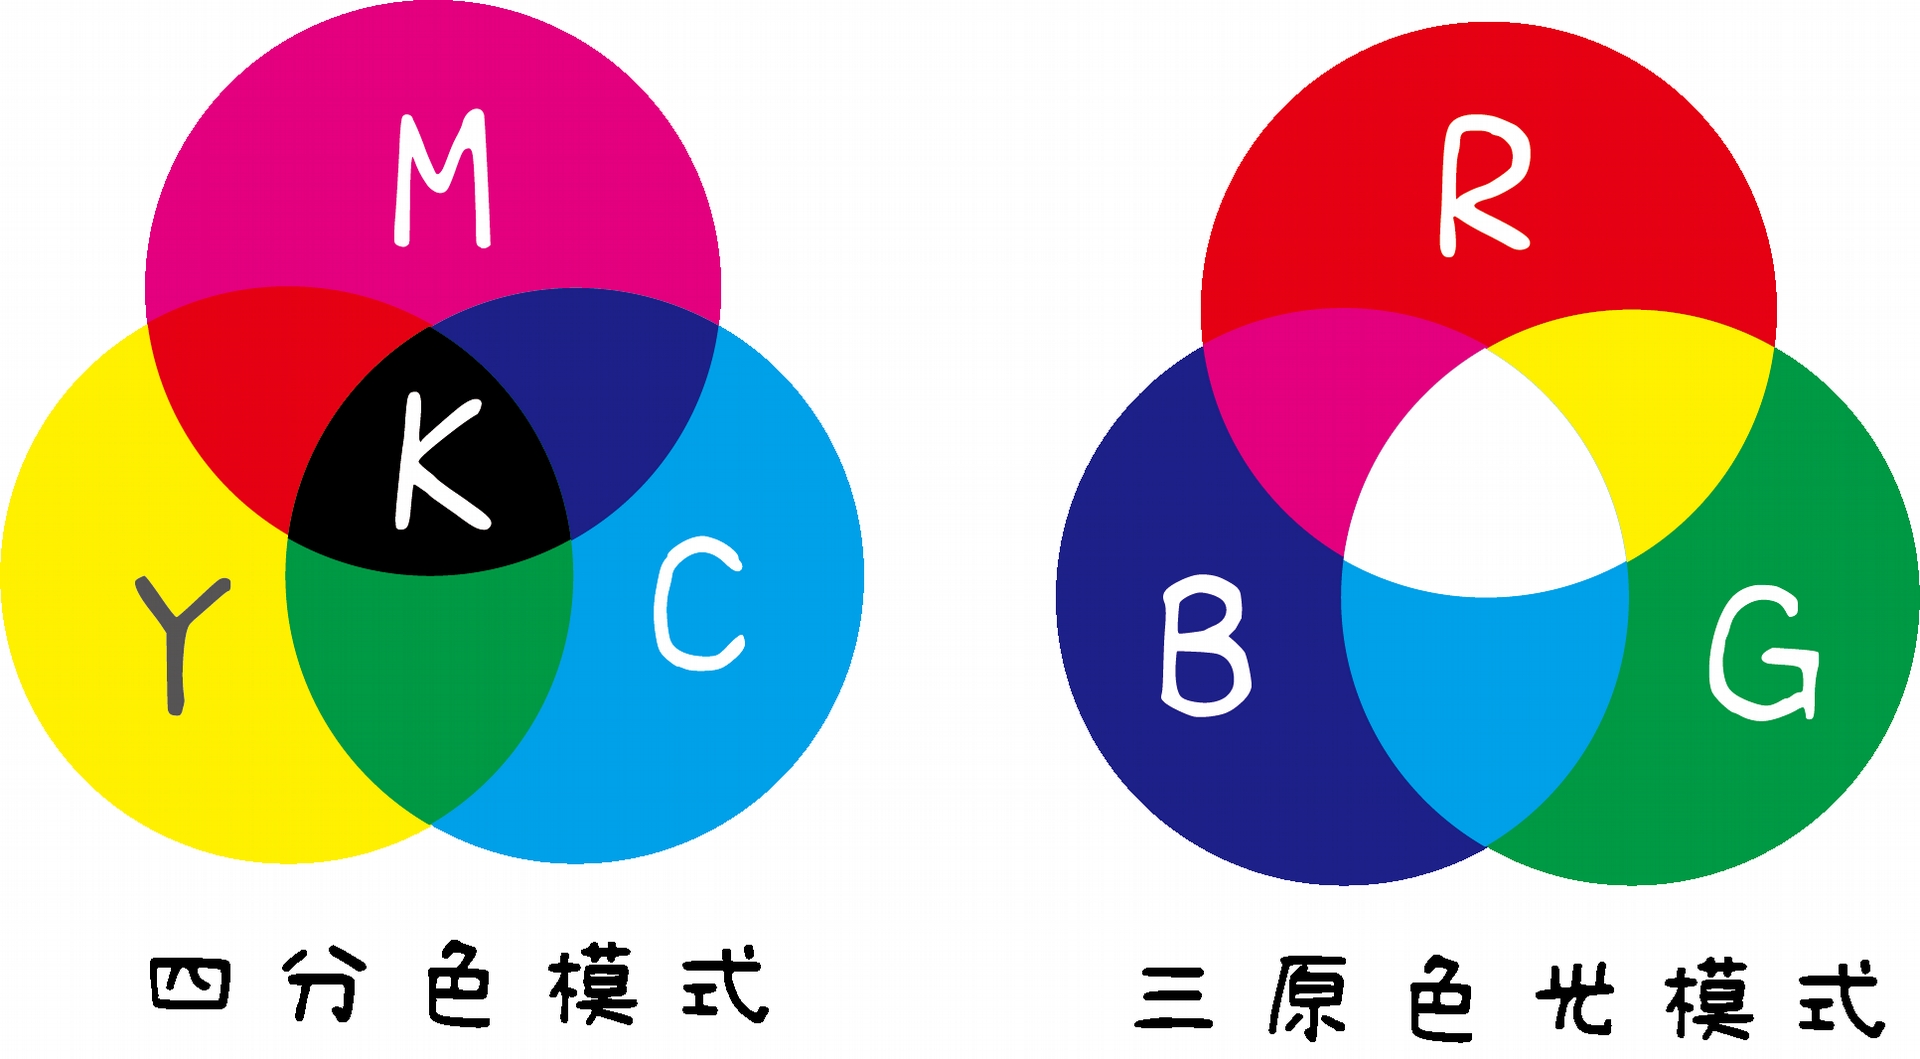 兩種模式最大的差異在於，三原色光模式的原理是紅、藍、綠的光線同時照射在視網膜上，我們眼睛會辨識成白光。四分色模式則是青色、洋紅、黃色顏料疊色後會變成黑色。RGB模式常用在螢幕等發光產品上，而CMYK模式則使用在印刷上。